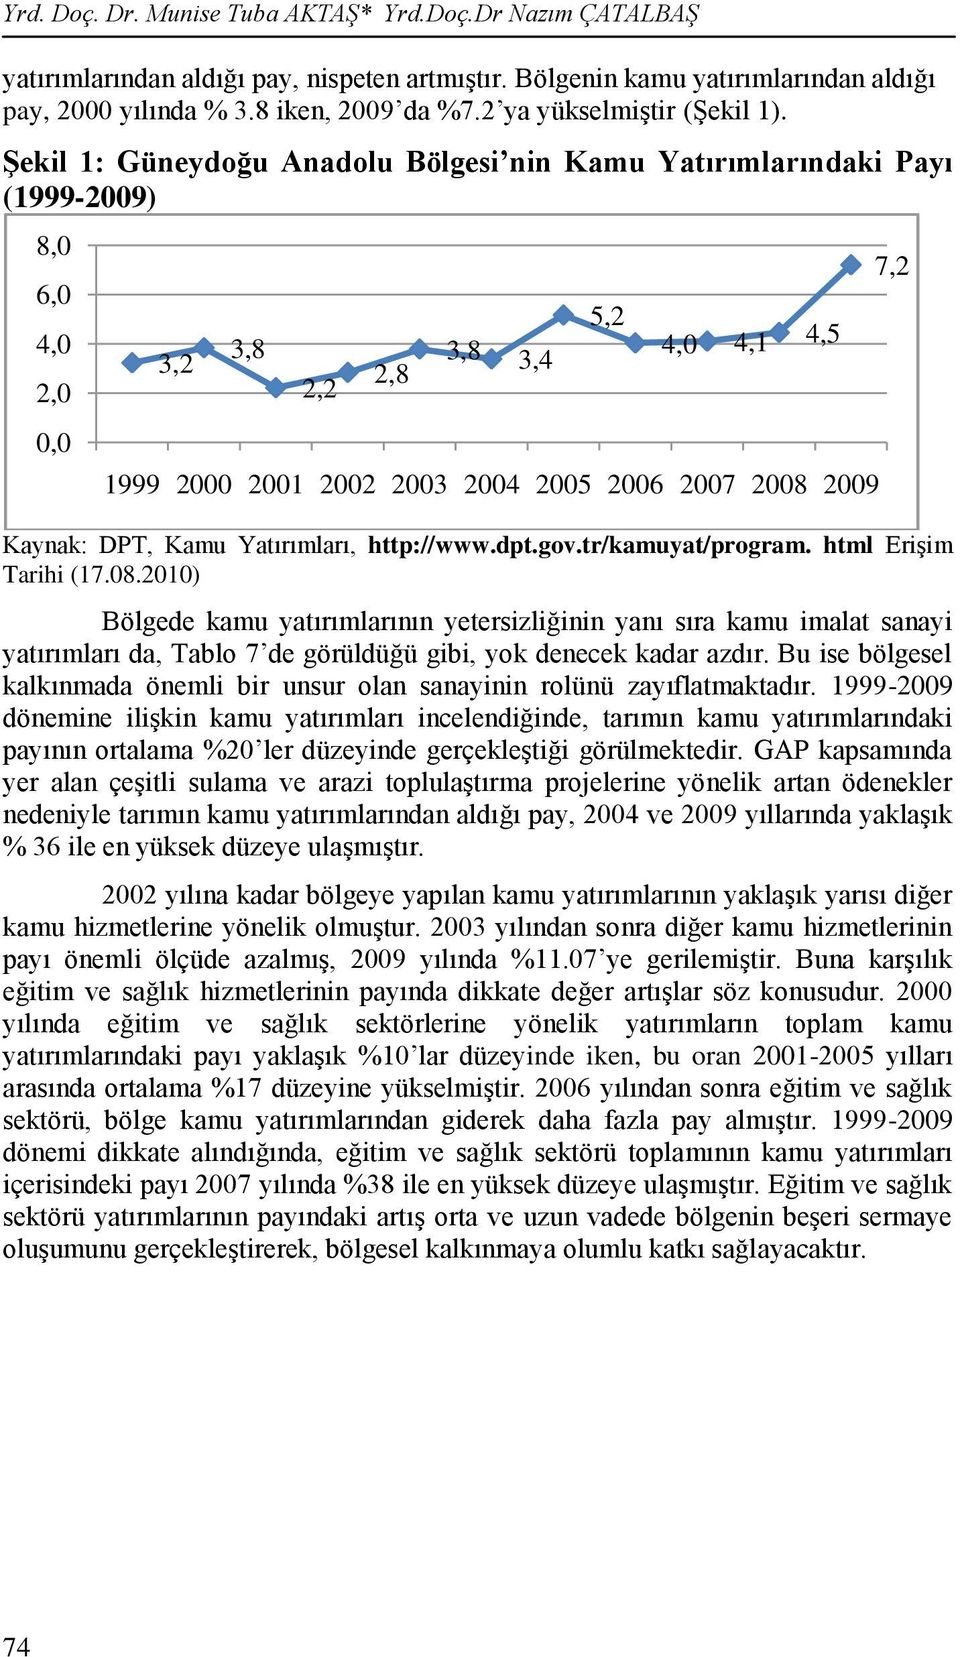 gov.tr/kamuyat/program. html EriĢim Tarihi (17.08.2010) Bölgede kamu yatırımlarının yetersizliğinin yanı sıra kamu imalat sanayi yatırımları da, Tablo 7 de görüldüğü gibi, yok denecek kadar azdır.